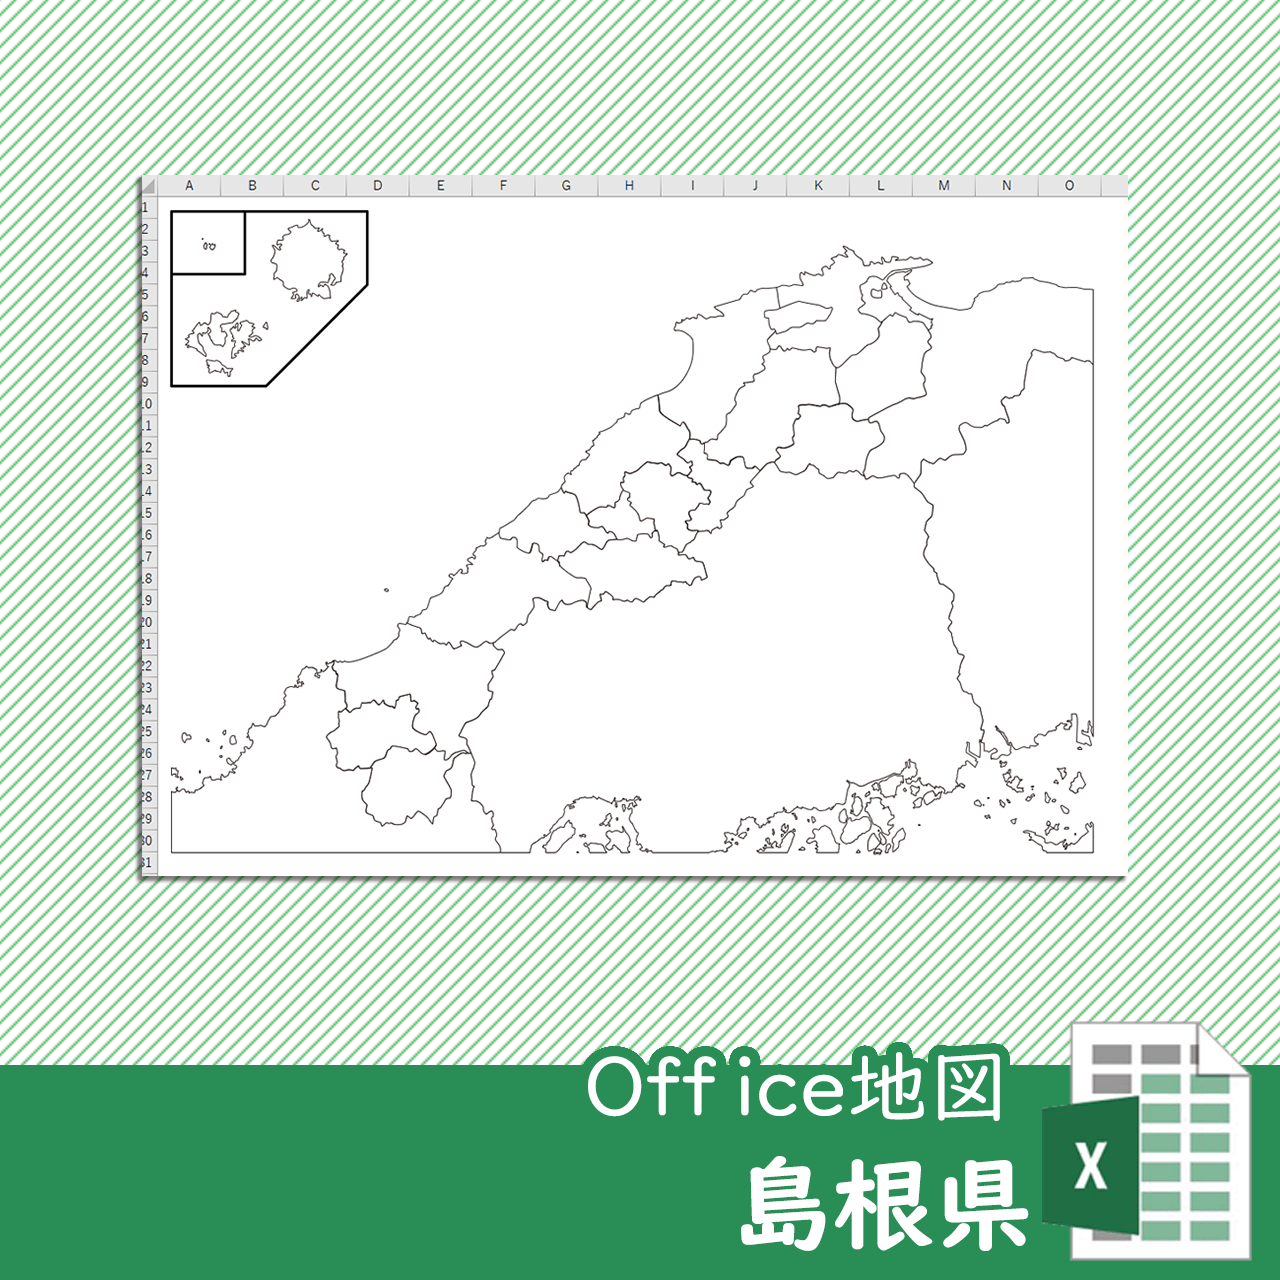 島根県のOffice地図のサムネイル